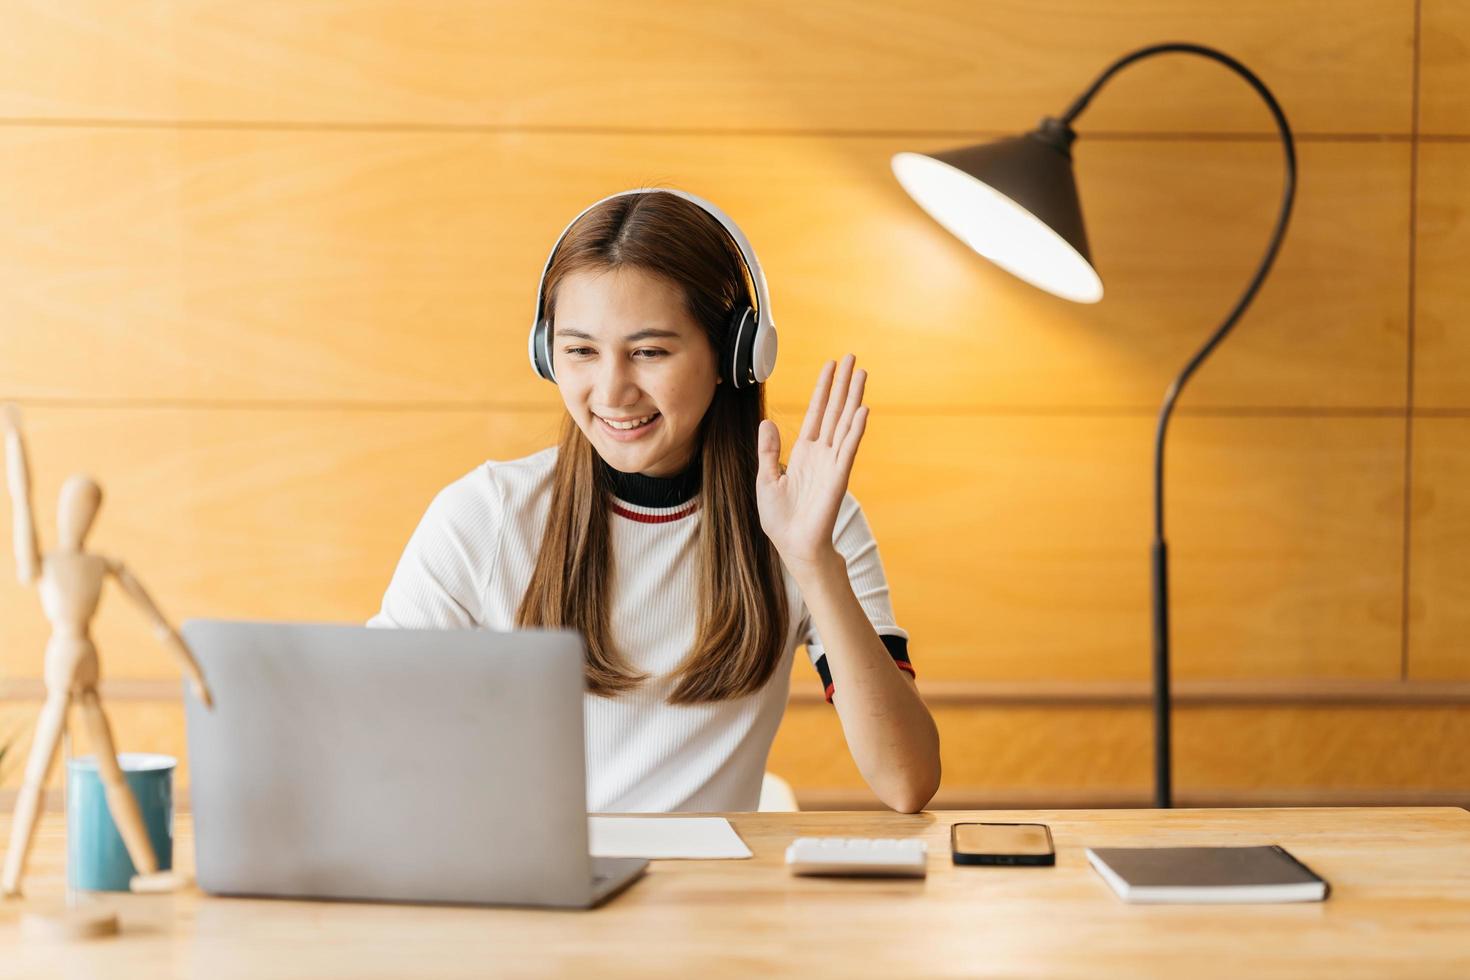 leende asiatisk ung kvinna som använder headset tittar på laptop skärm lyssna och lära sig onlinekurser. glad kinesisk affärskvinna med hörlurar videosamtal för kundtjänst foto